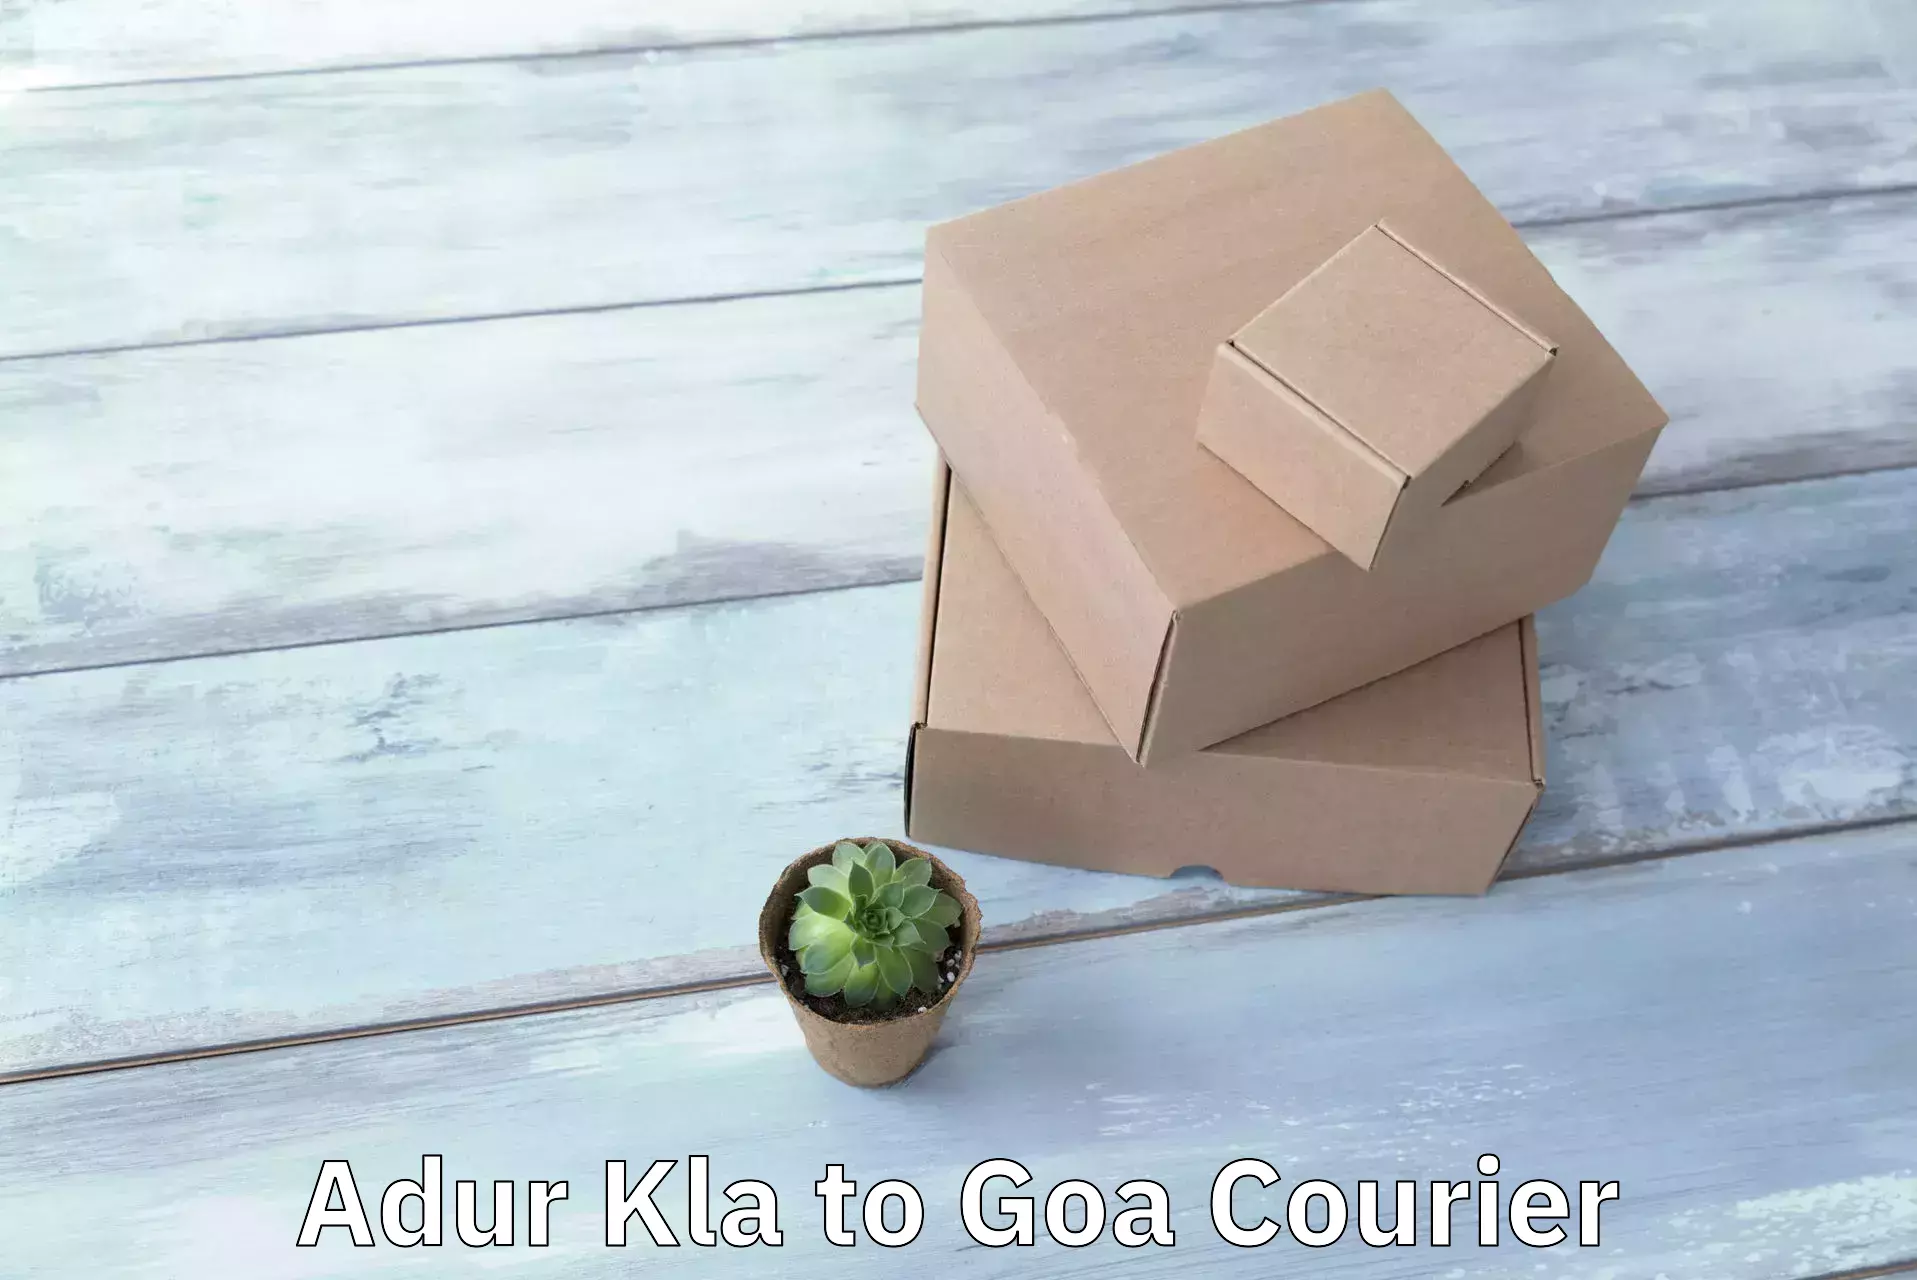 Automated parcel services Adur Kla to South Goa